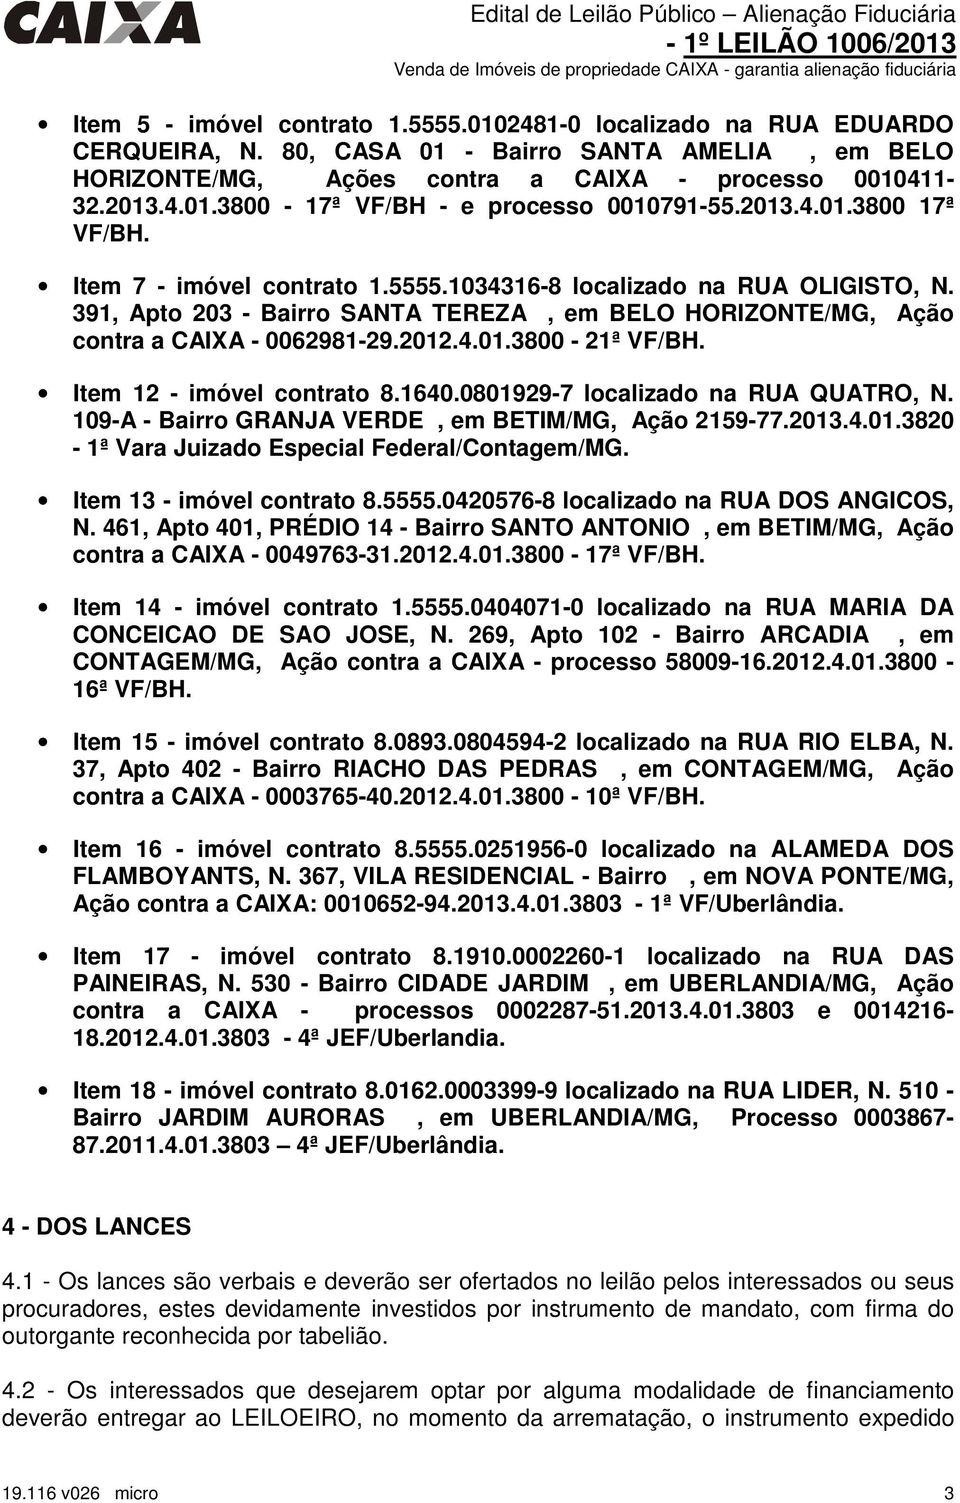 Item 12 - imóvel contrato 8.1640.0801929-7 localizado na RUA QUATRO, N. 109-A - Bairro GRANJA VERDE, em BETIM/MG, Ação 2159-77.2013.4.01.3820-1ª Vara Juizado Especial Federal/Contagem/MG.